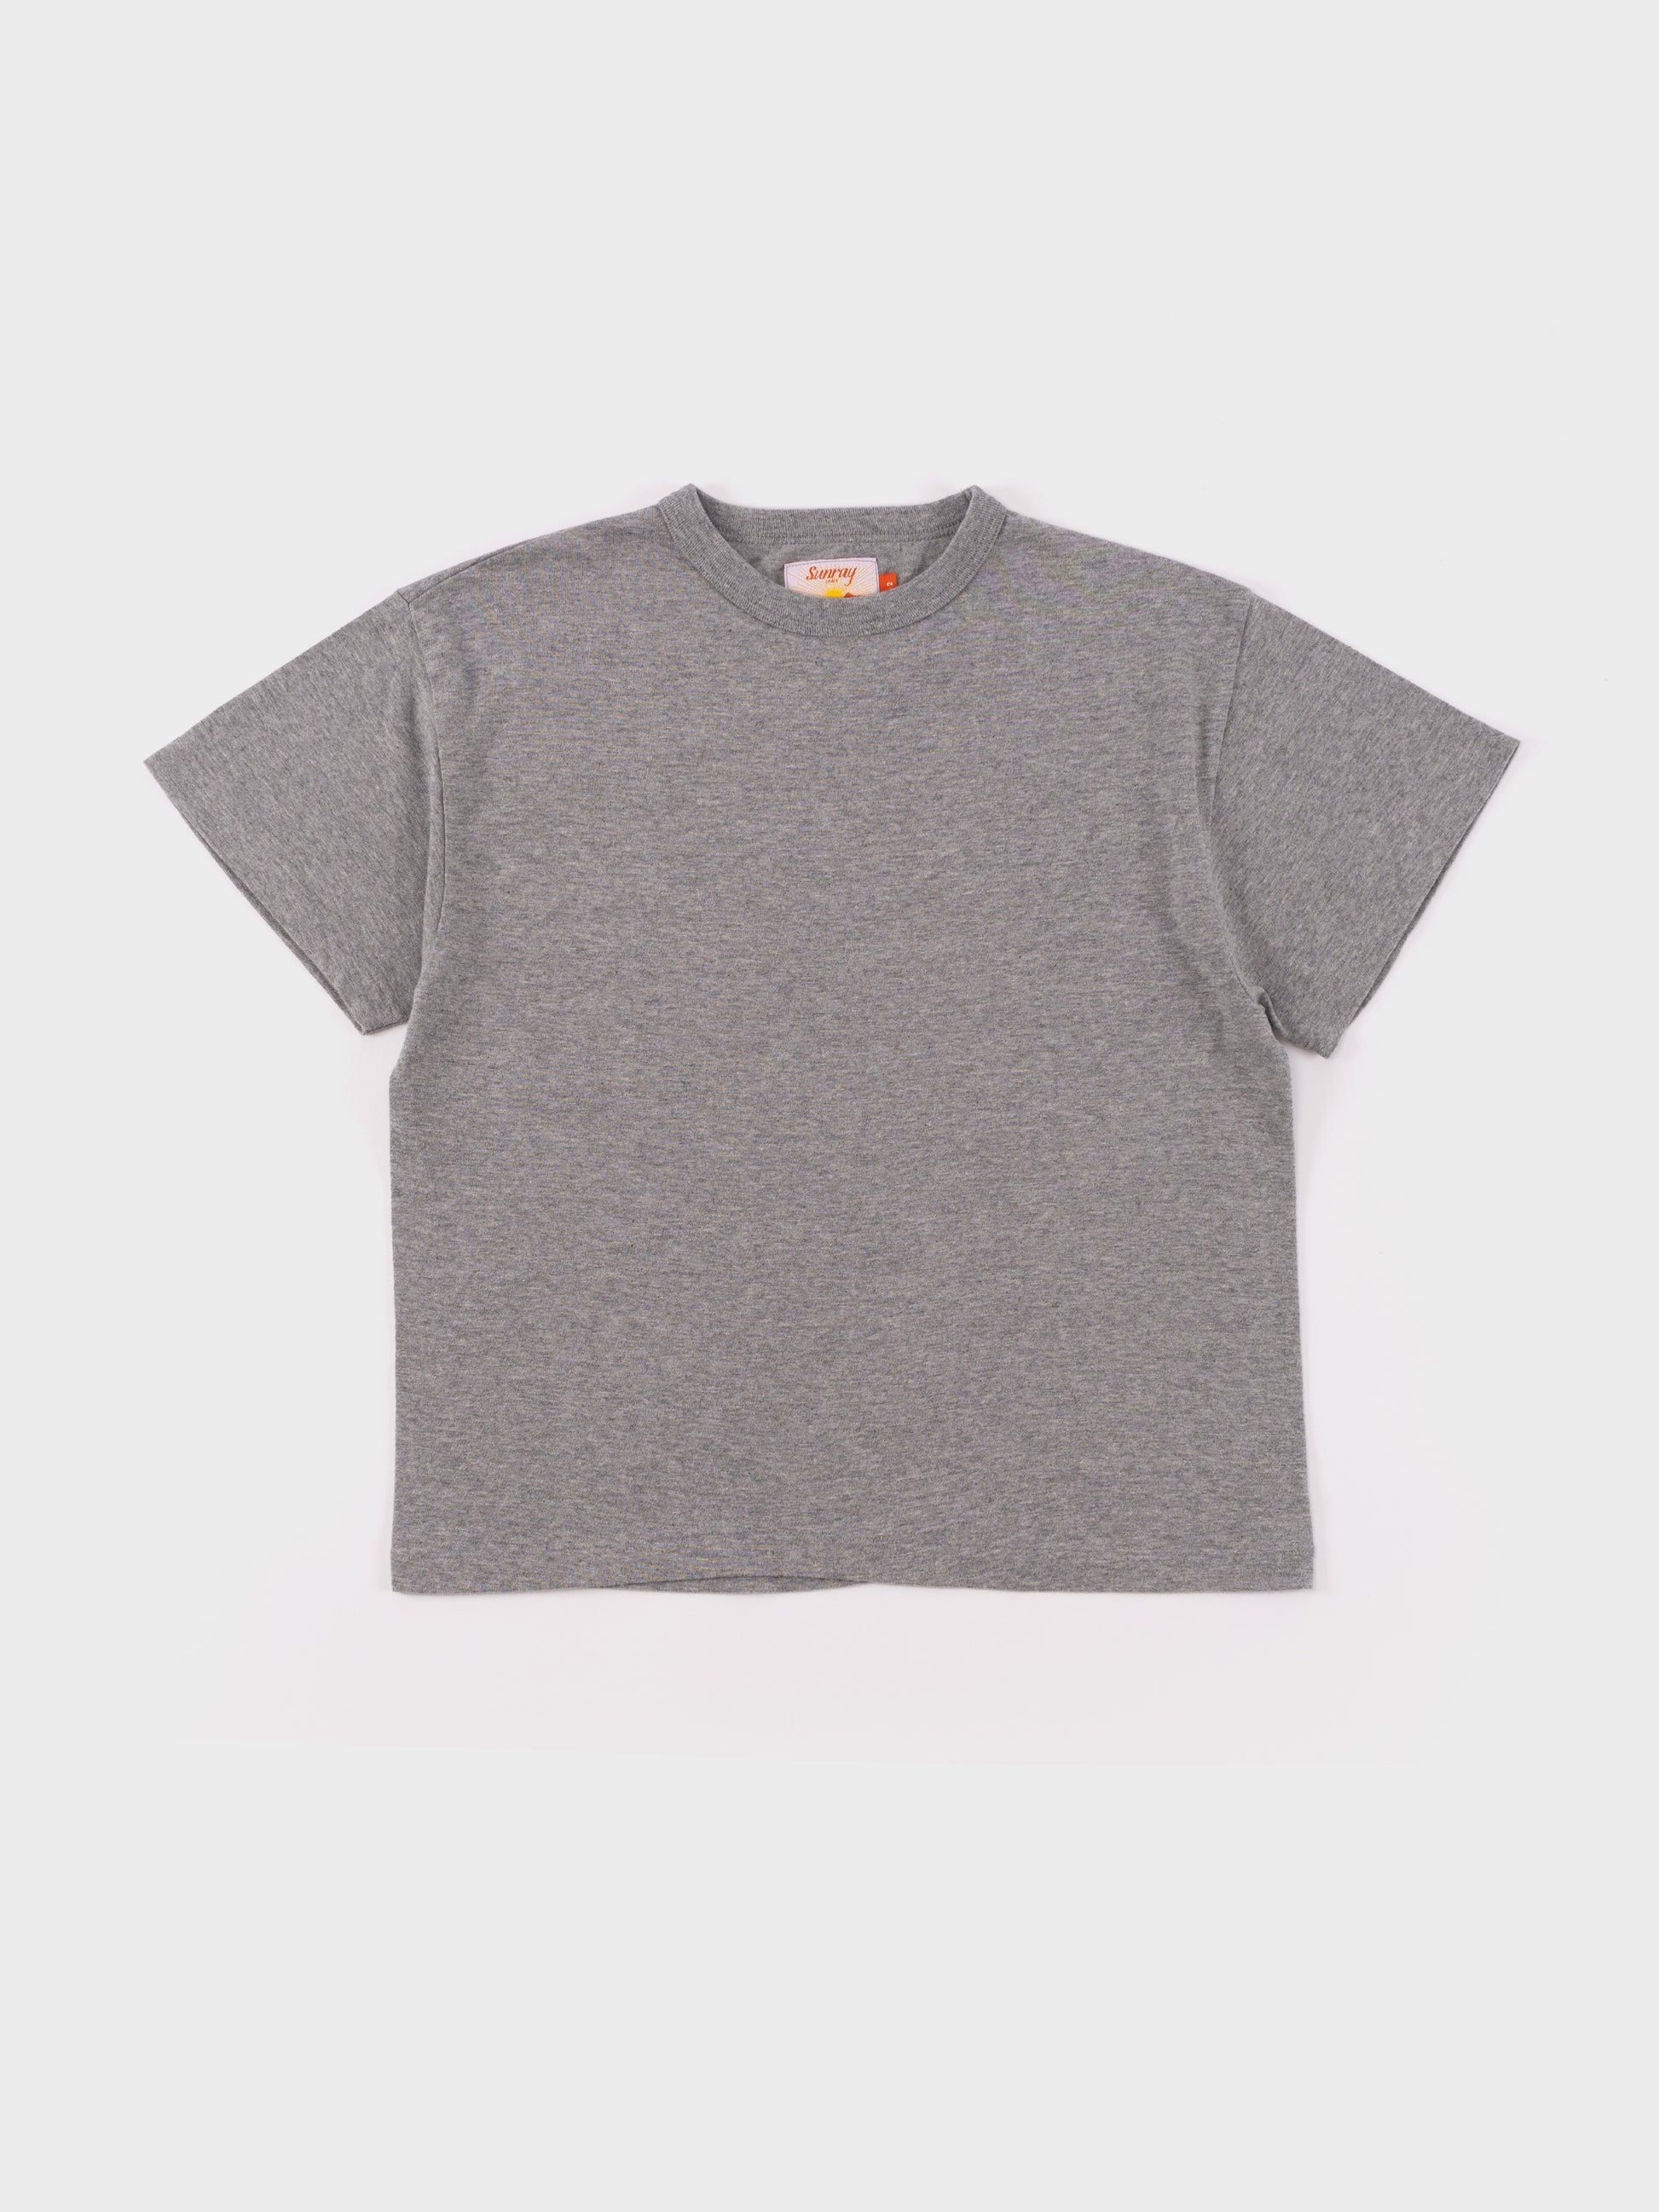 Sunray Hi'Aka SS T-Shirt - Hambledon Grey